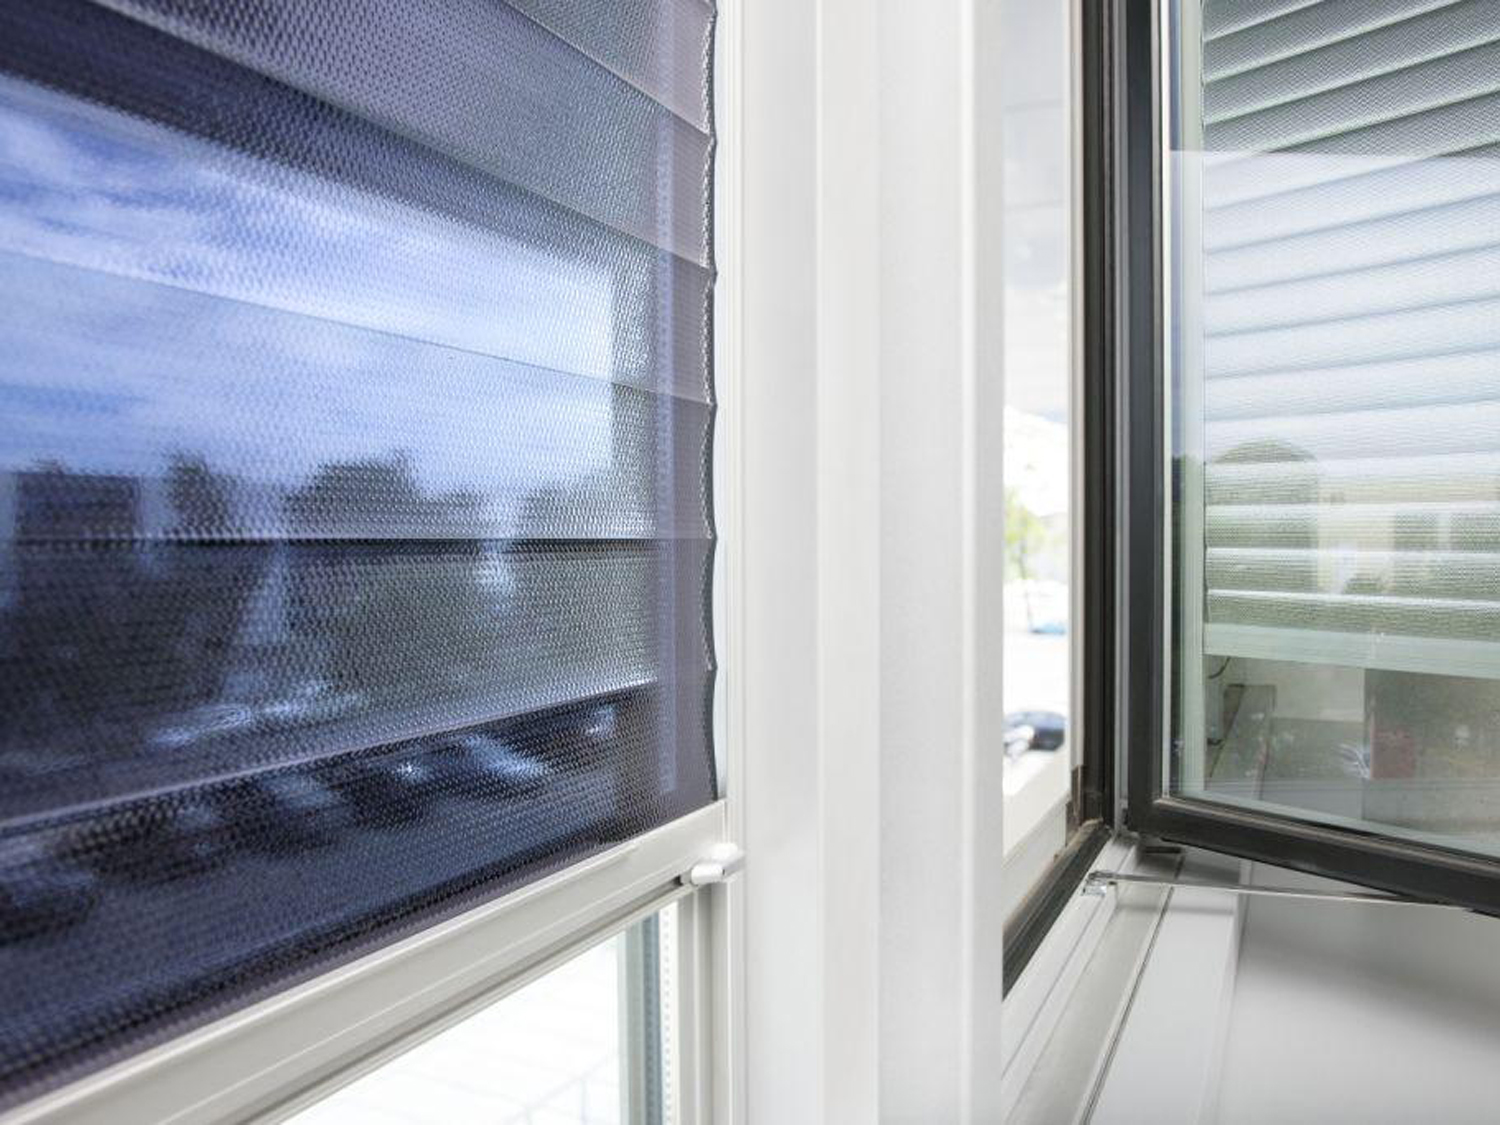 Rollos aus durchsichtiger und reflektierender Folie schützen gegen Hitze und Blendung, für Fenster in Büros oder für privat 